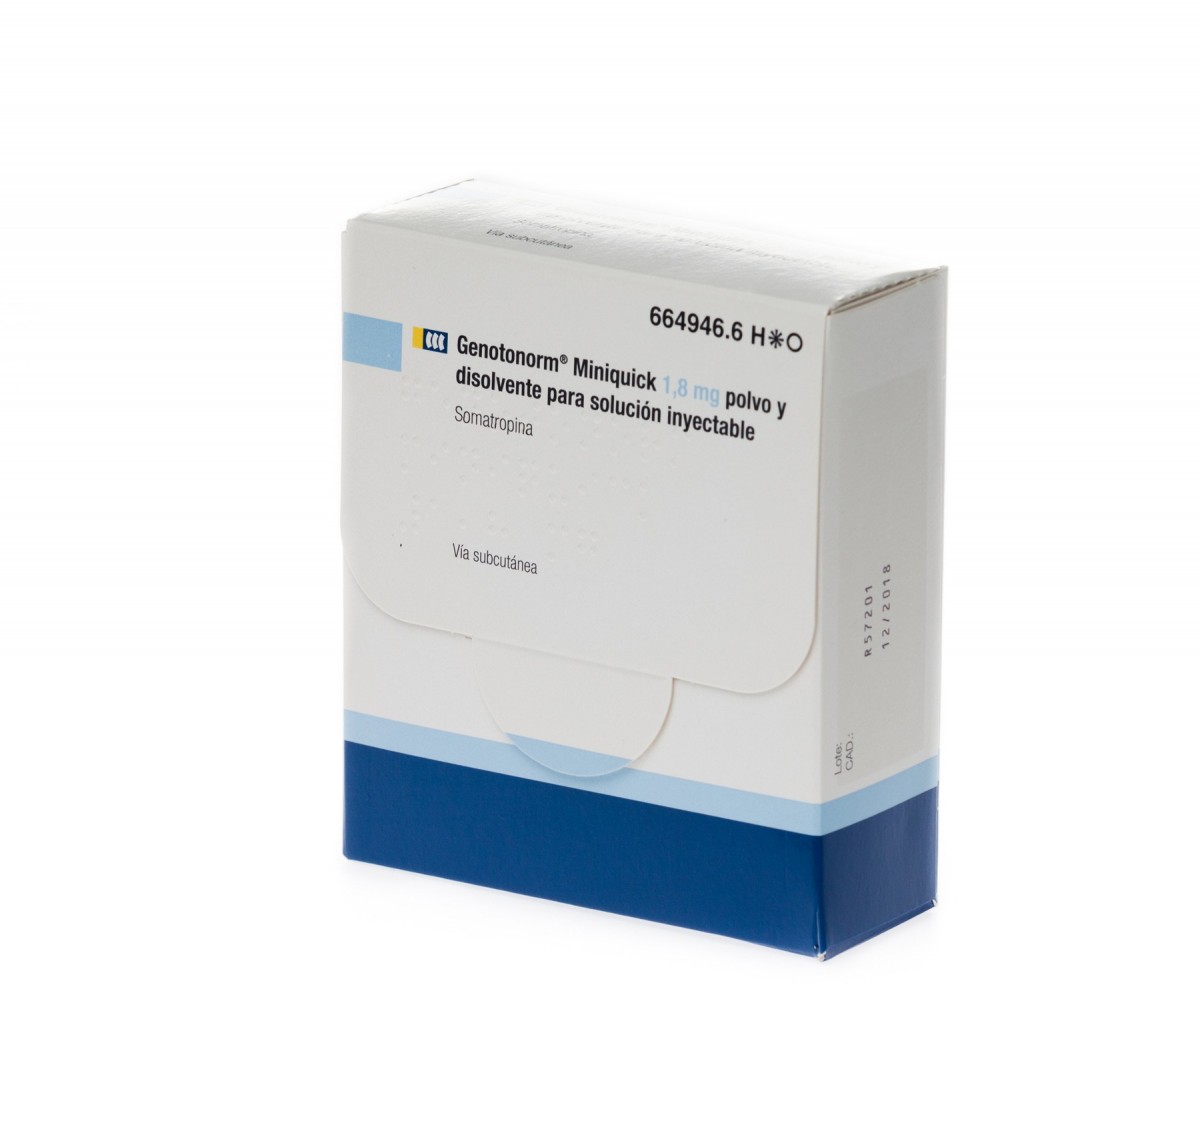 GENOTONORM MINIQUICK 1,8 mg  POLVO Y DISOLVENTE PARA SOLUCION INYECTABLE , 28 (4 x 7) viales de doble cámara fotografía del envase.